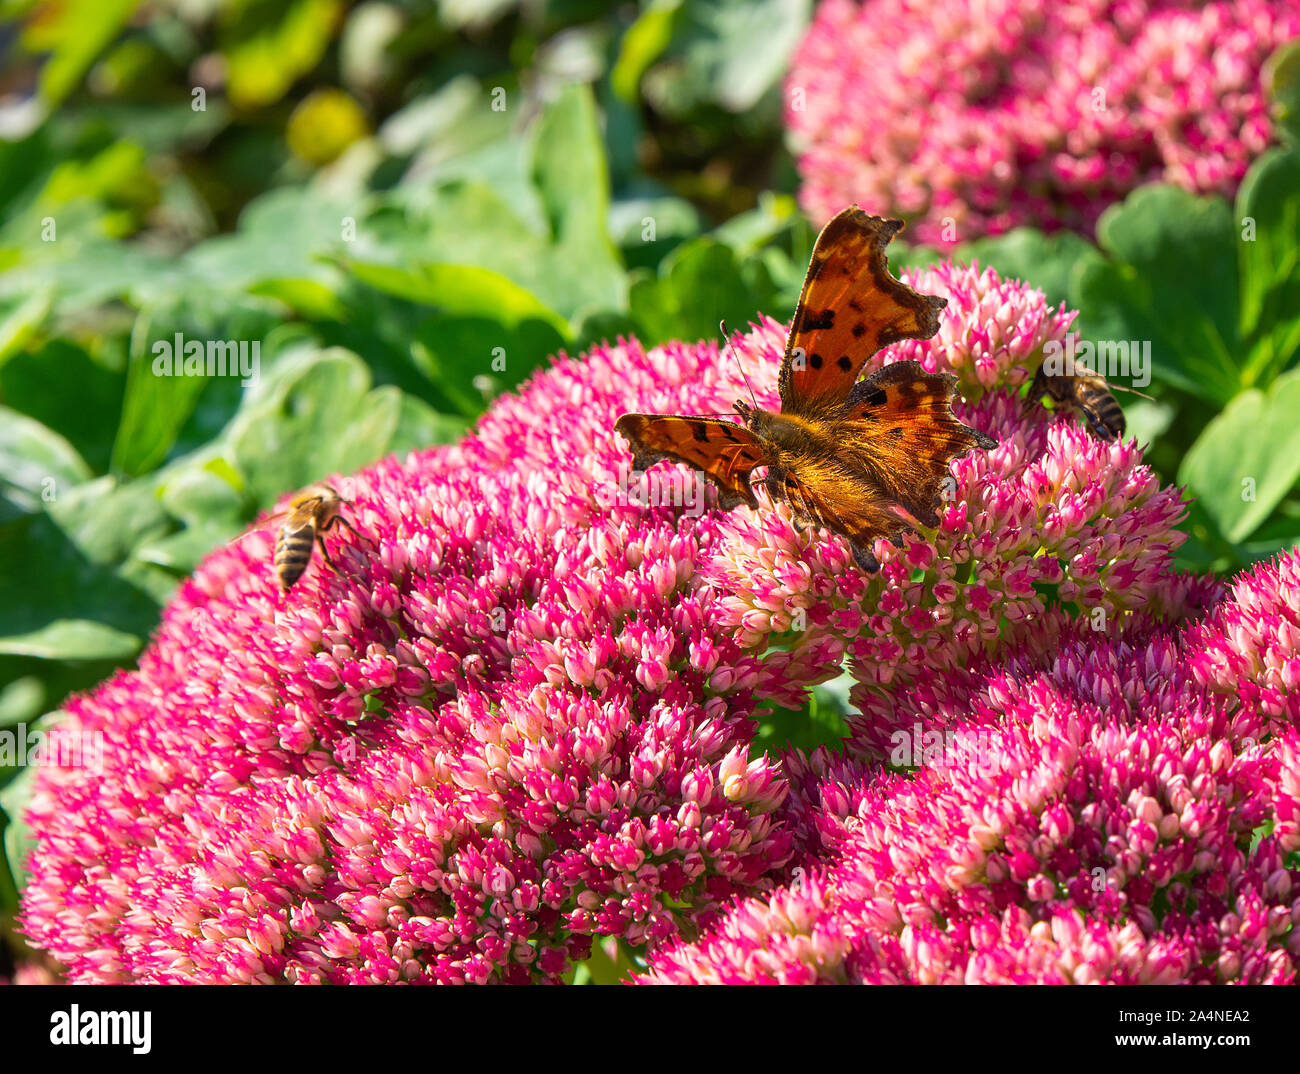 Une belle virgule papillon et des abeilles nourrissante sur une grande joie d'automne de Sedum rose dans un jardin à Sawdon North Yorkshire Angleterre Royaume-Uni Banque D'Images